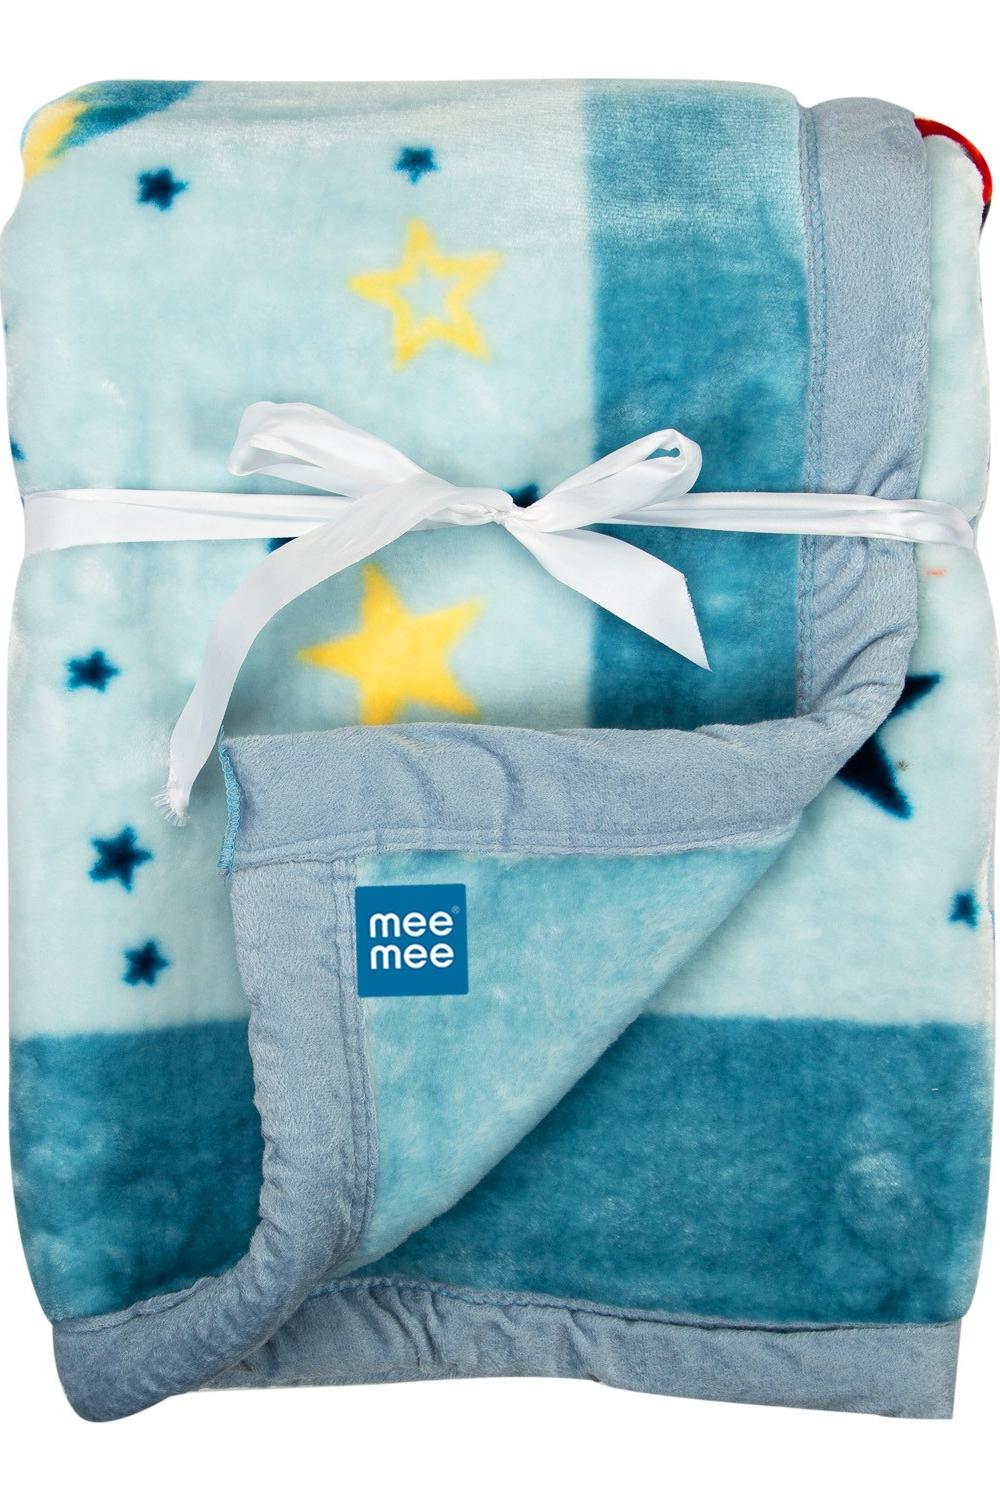 Mee Mee Soft Baby Blanket (Blue)